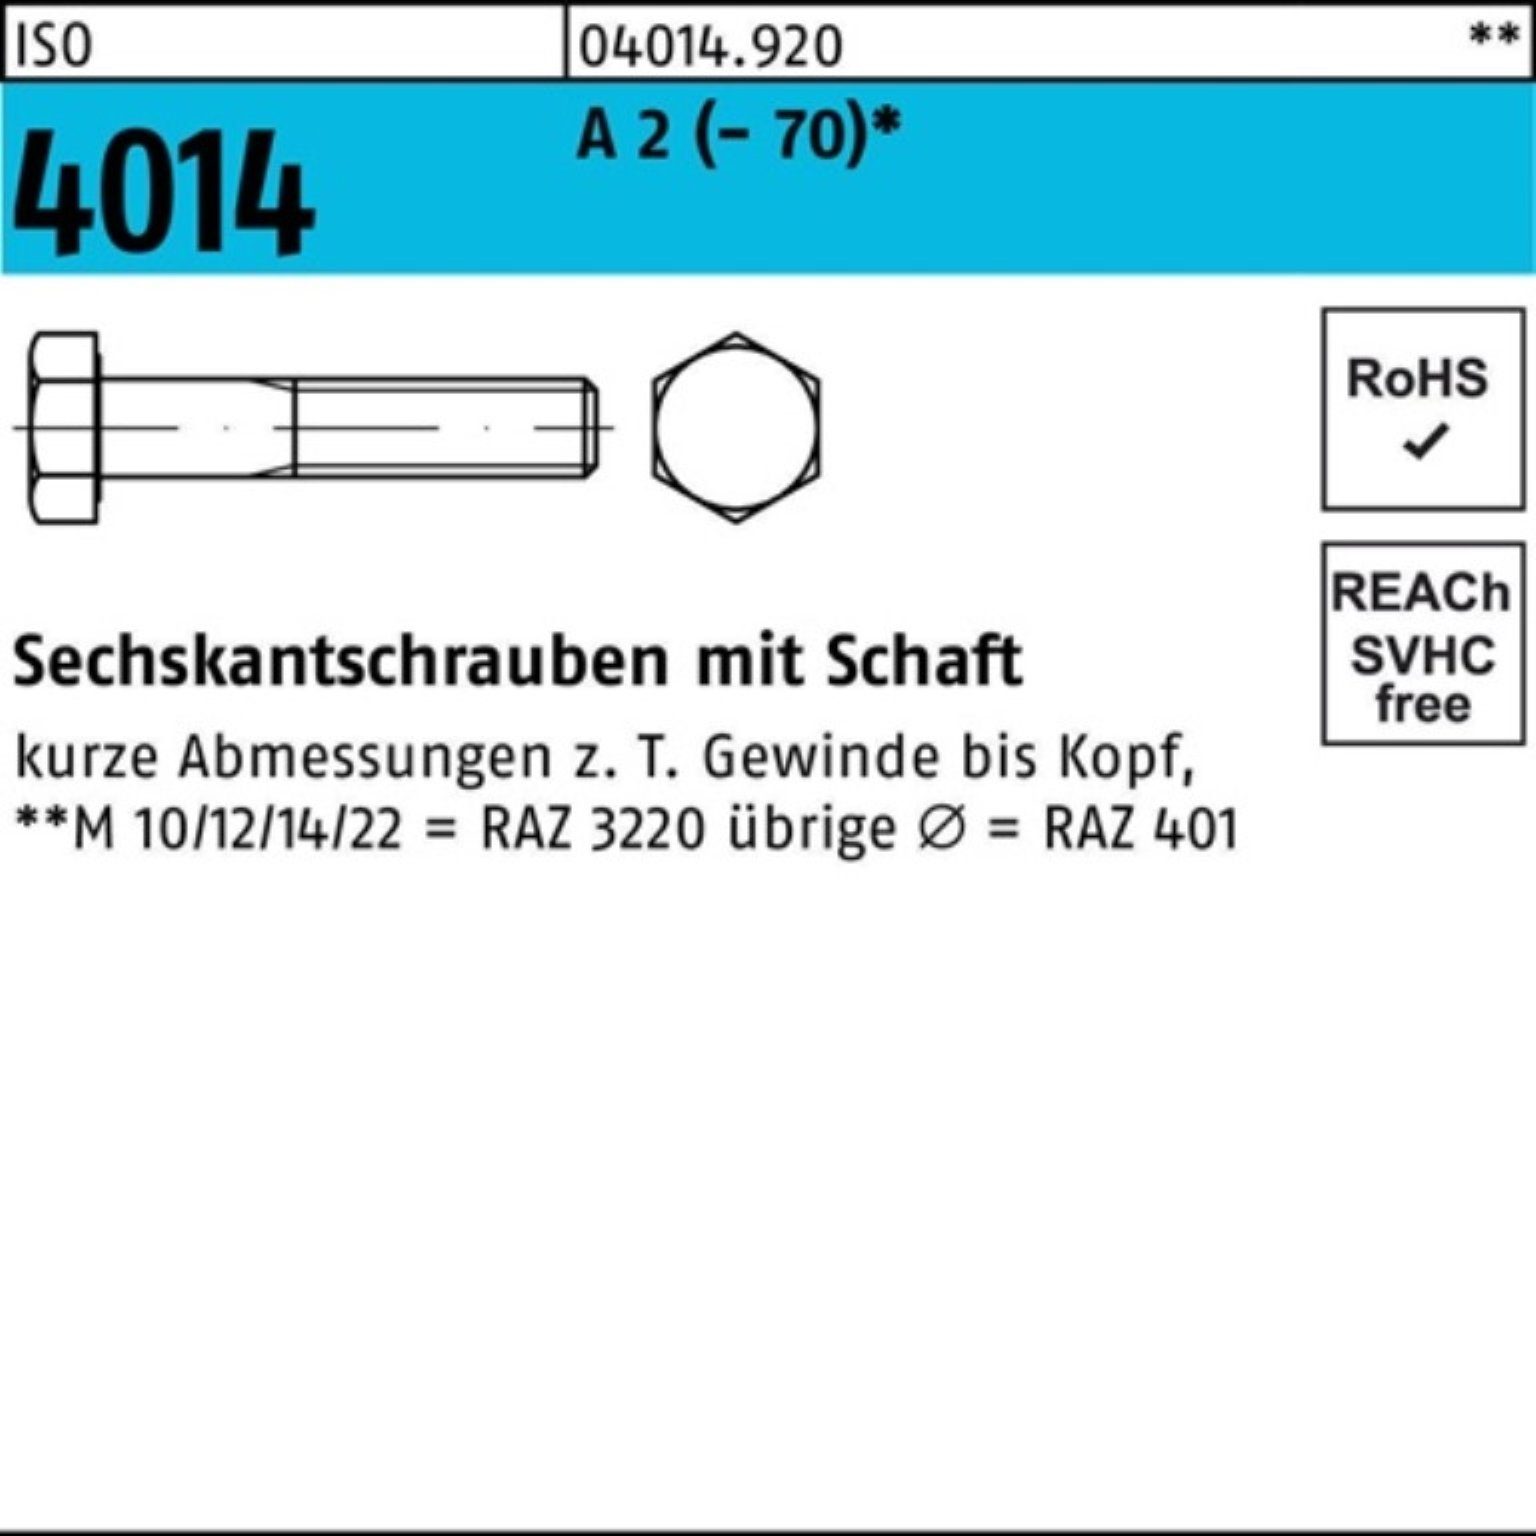 Bufab Sechskantschraube 100er Pack Sechskantschraube ISO 4014 Schaft M10x 45 A 2 (70) 100 St